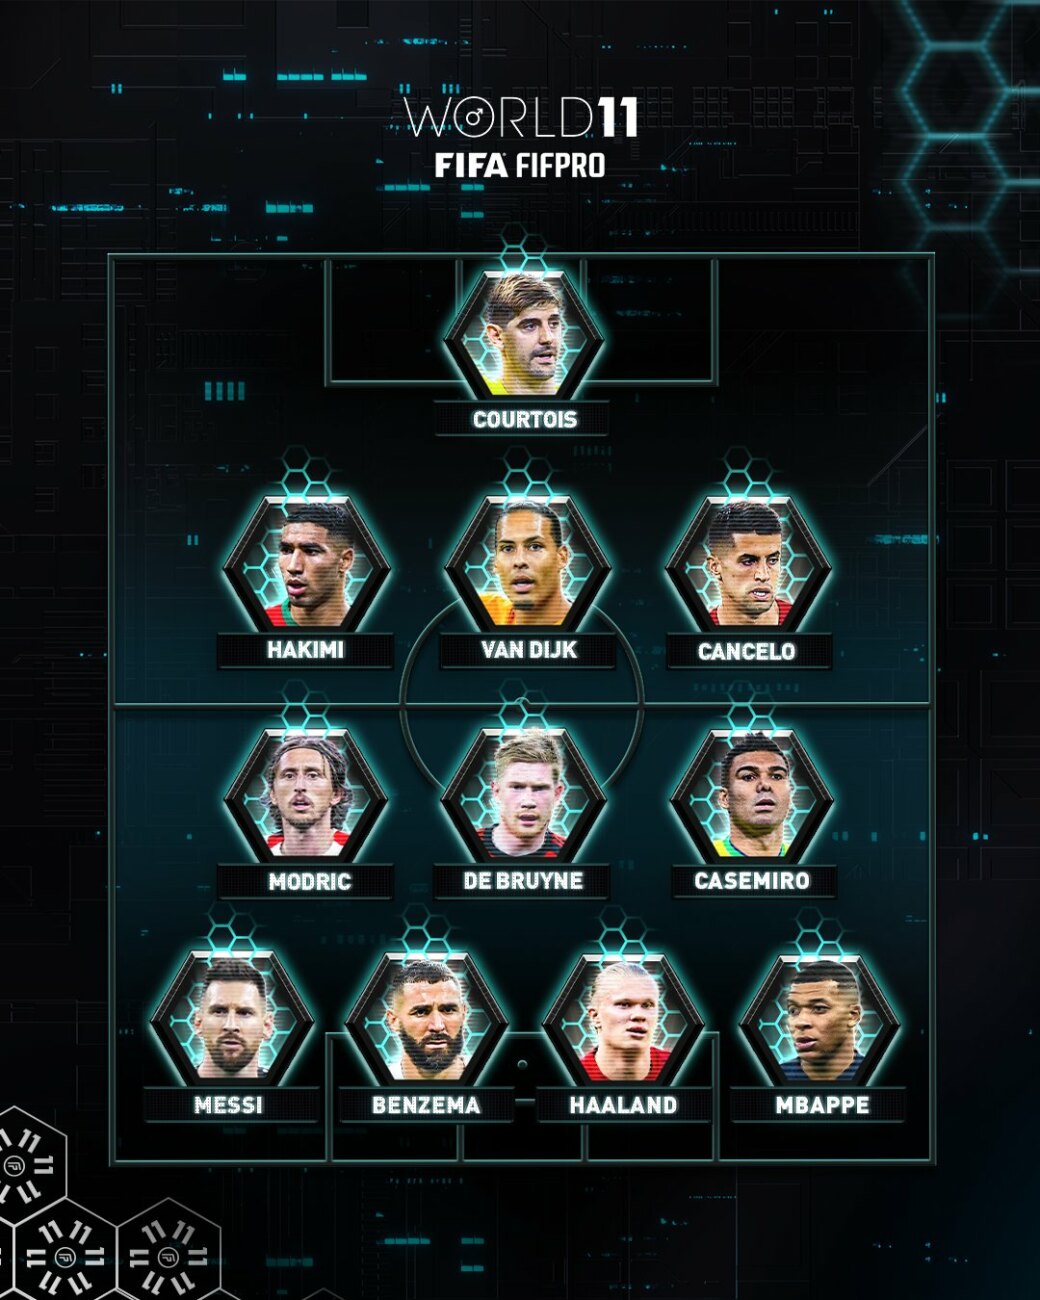 Versus / El mejor "once" del mundo según la FIFA